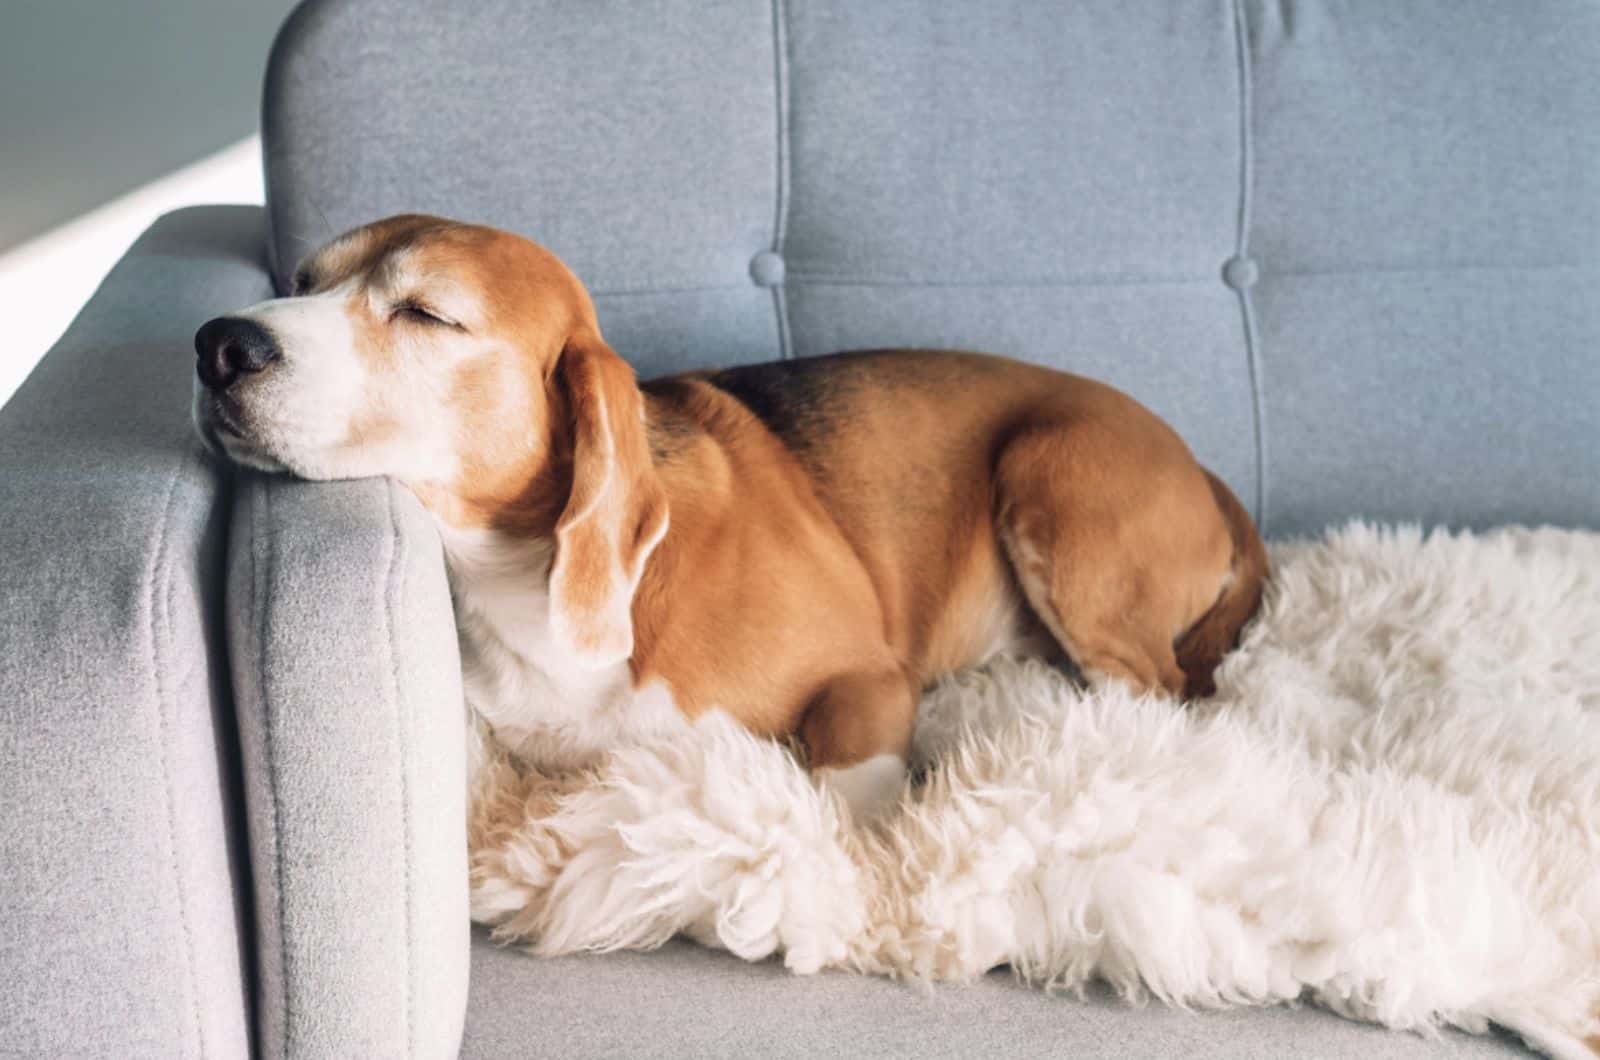 beagle sleeps on cozy sofa in an apartment